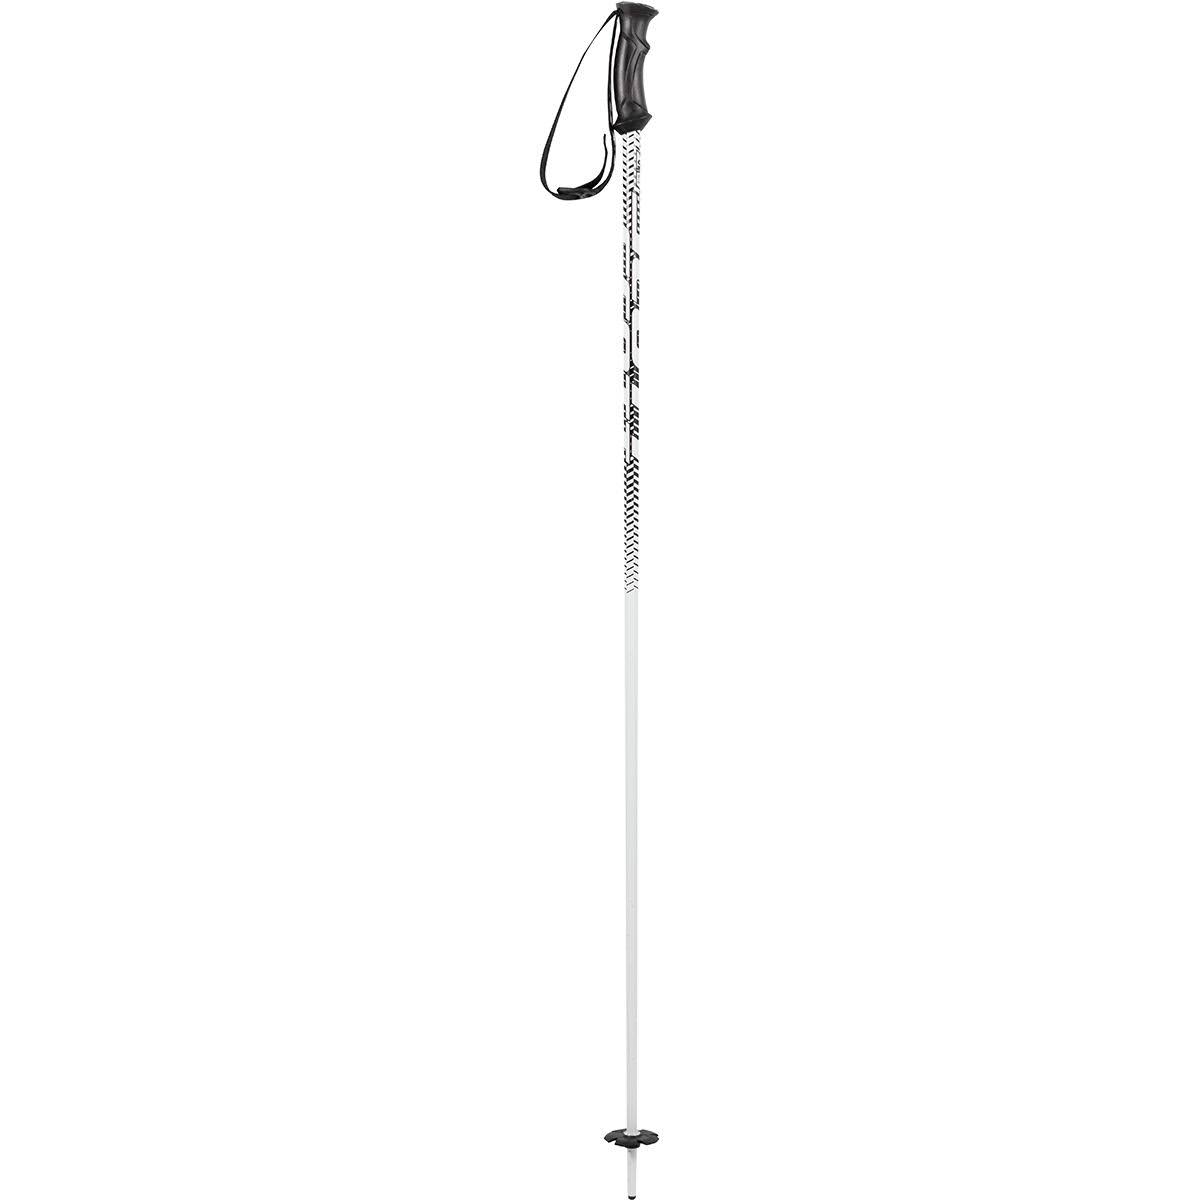 Scott 540 Ski Poles White, 120cm